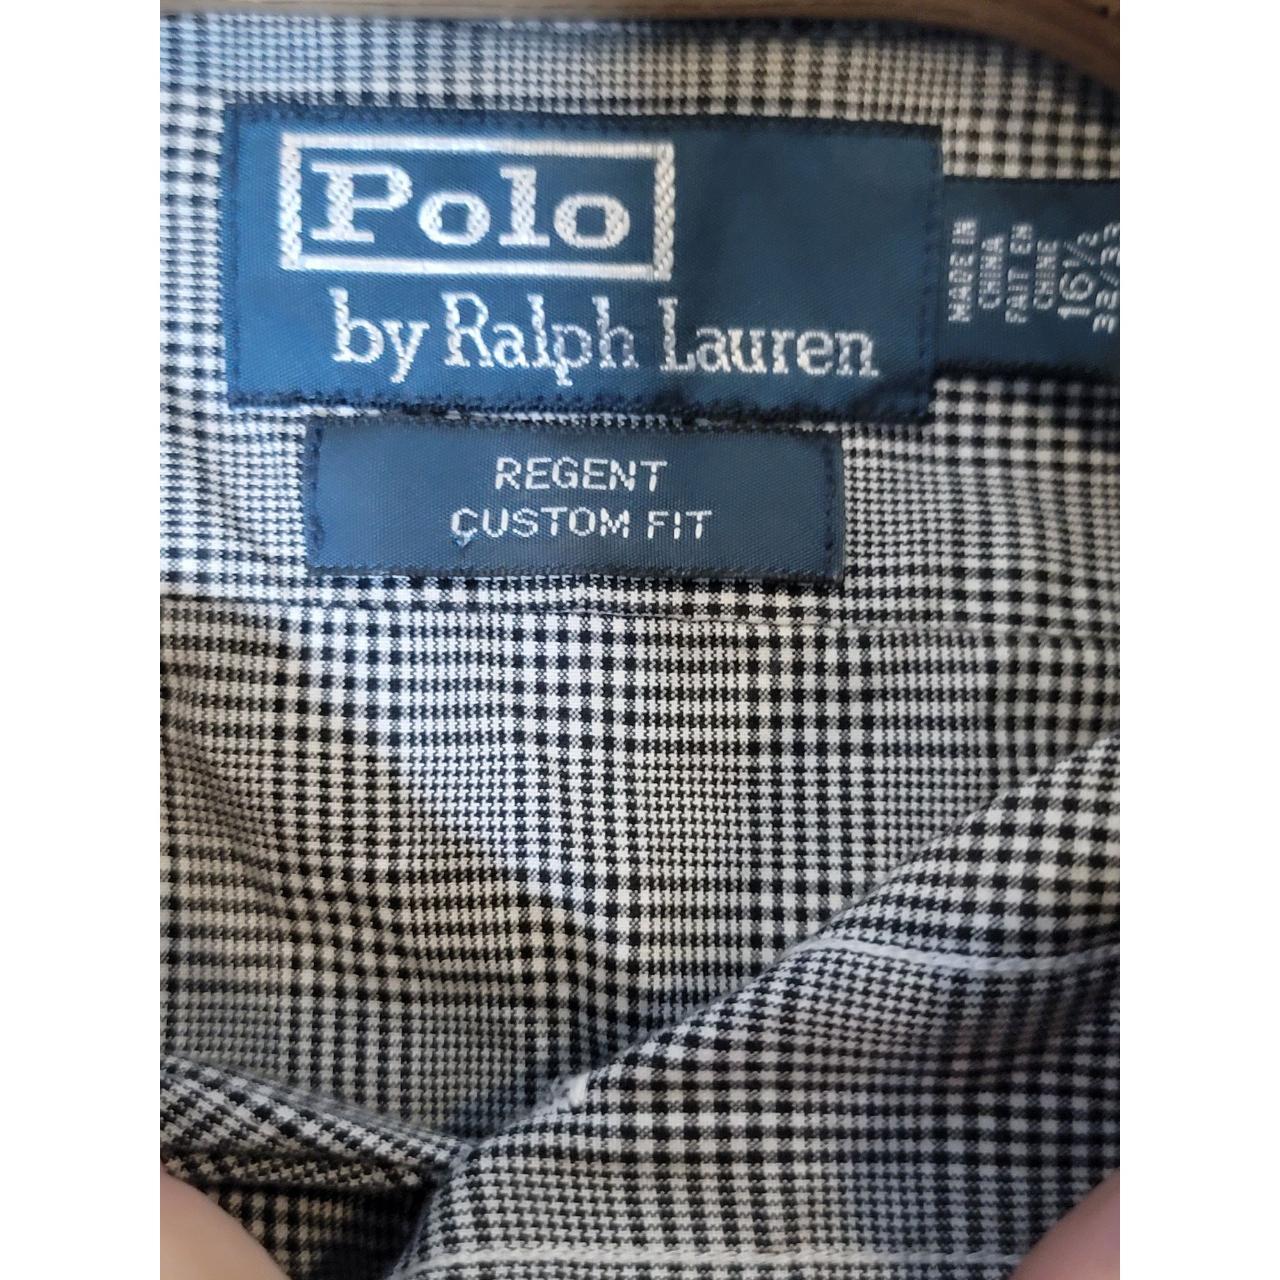 This Polo Ralph Lauren Regent Custom Fit shirt is a... - Depop